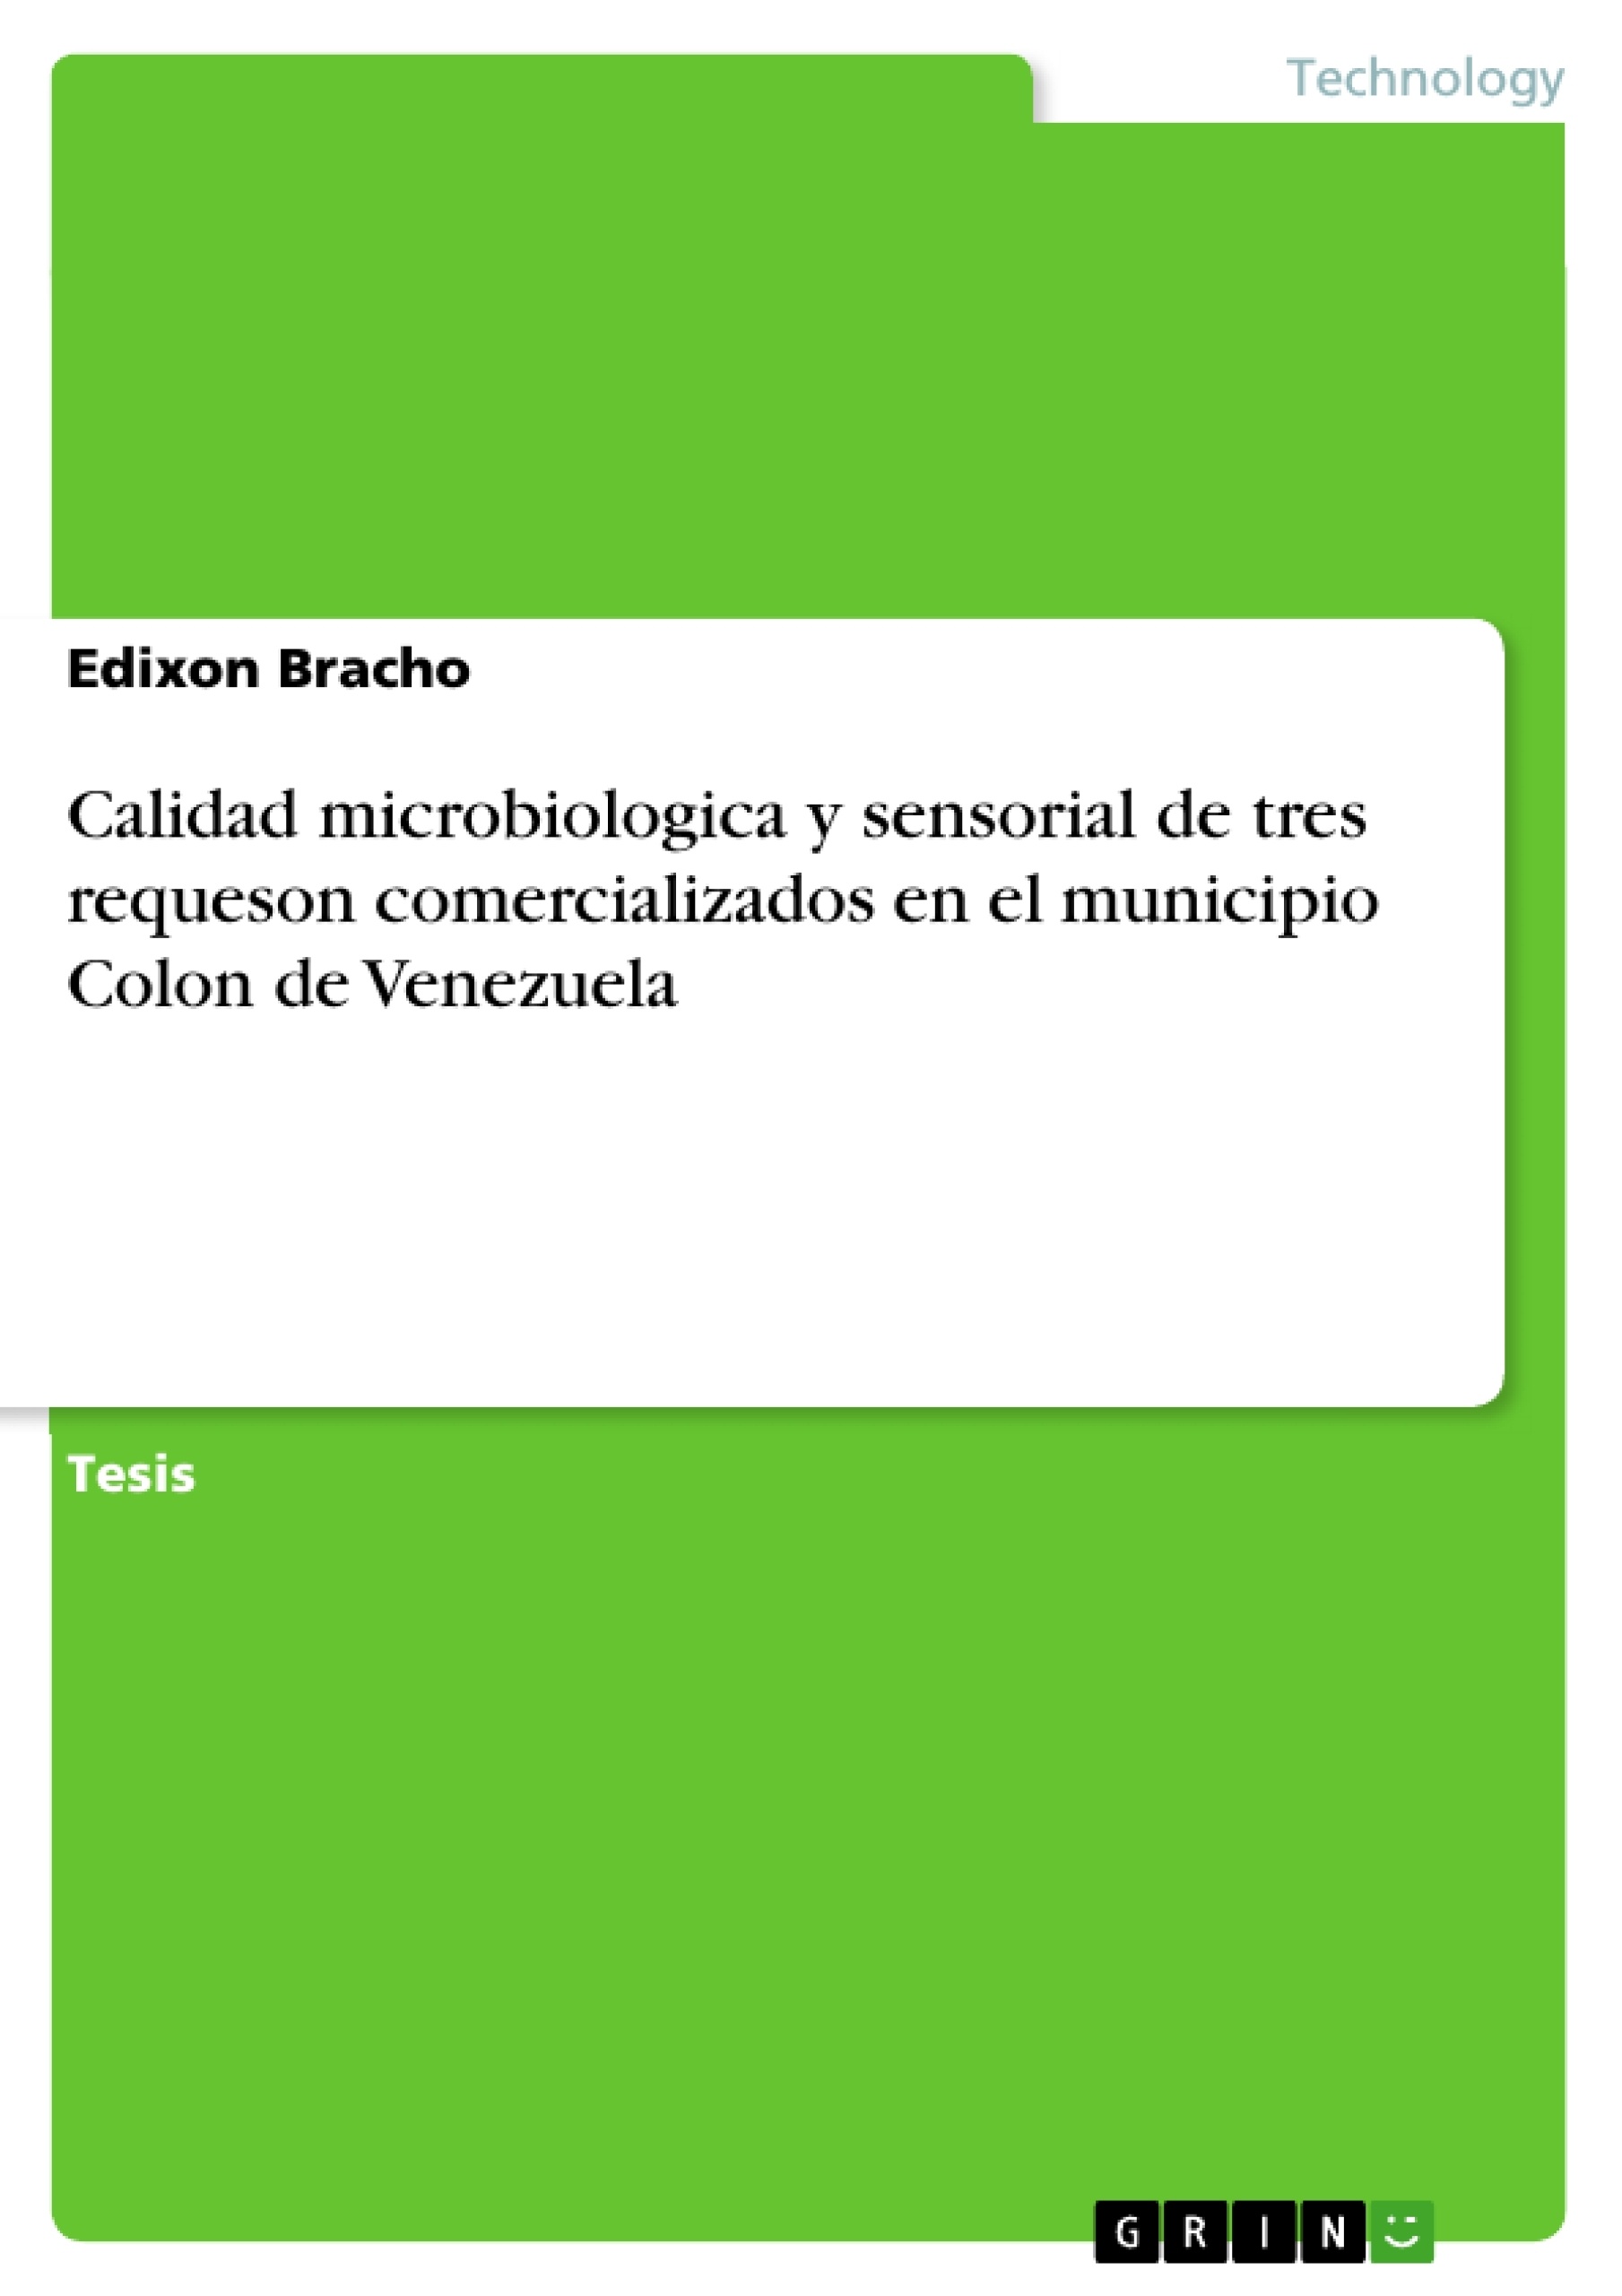 Title: Calidad microbiologica y sensorial de tres requeson comercializados en el municipio Colon de Venezuela